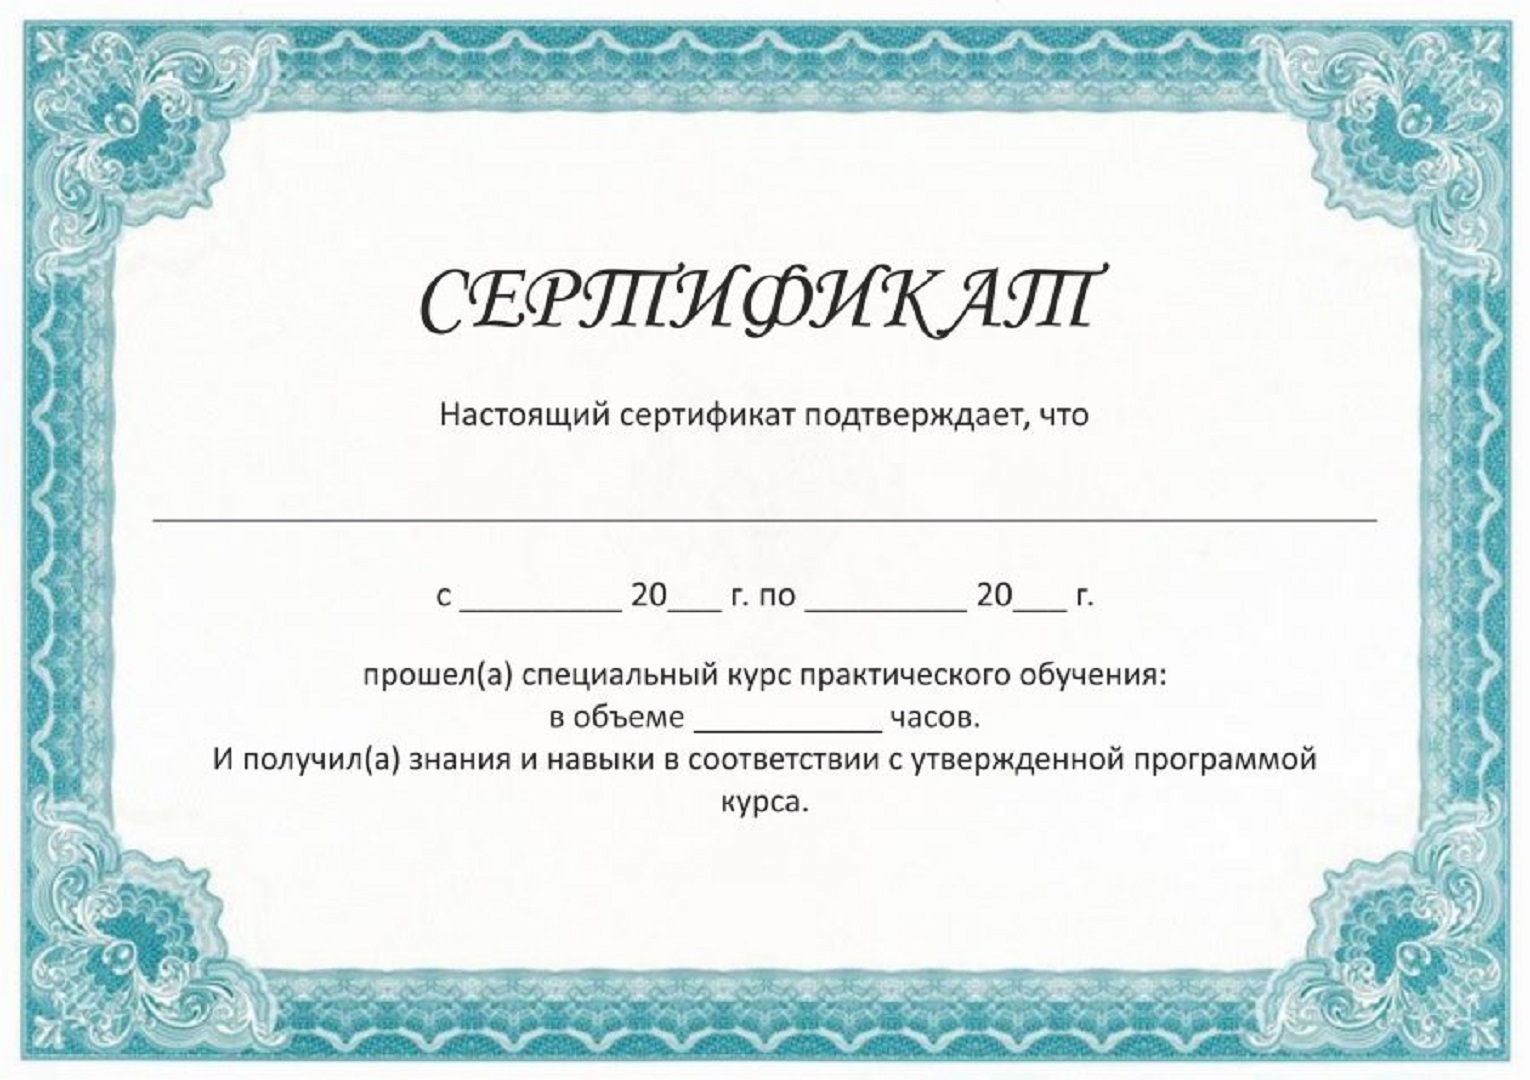 Сертификат об обучении шаблон. Сертификат. Сертификаты образцы бланков. Сертификат образец. Сертификат шаблон.